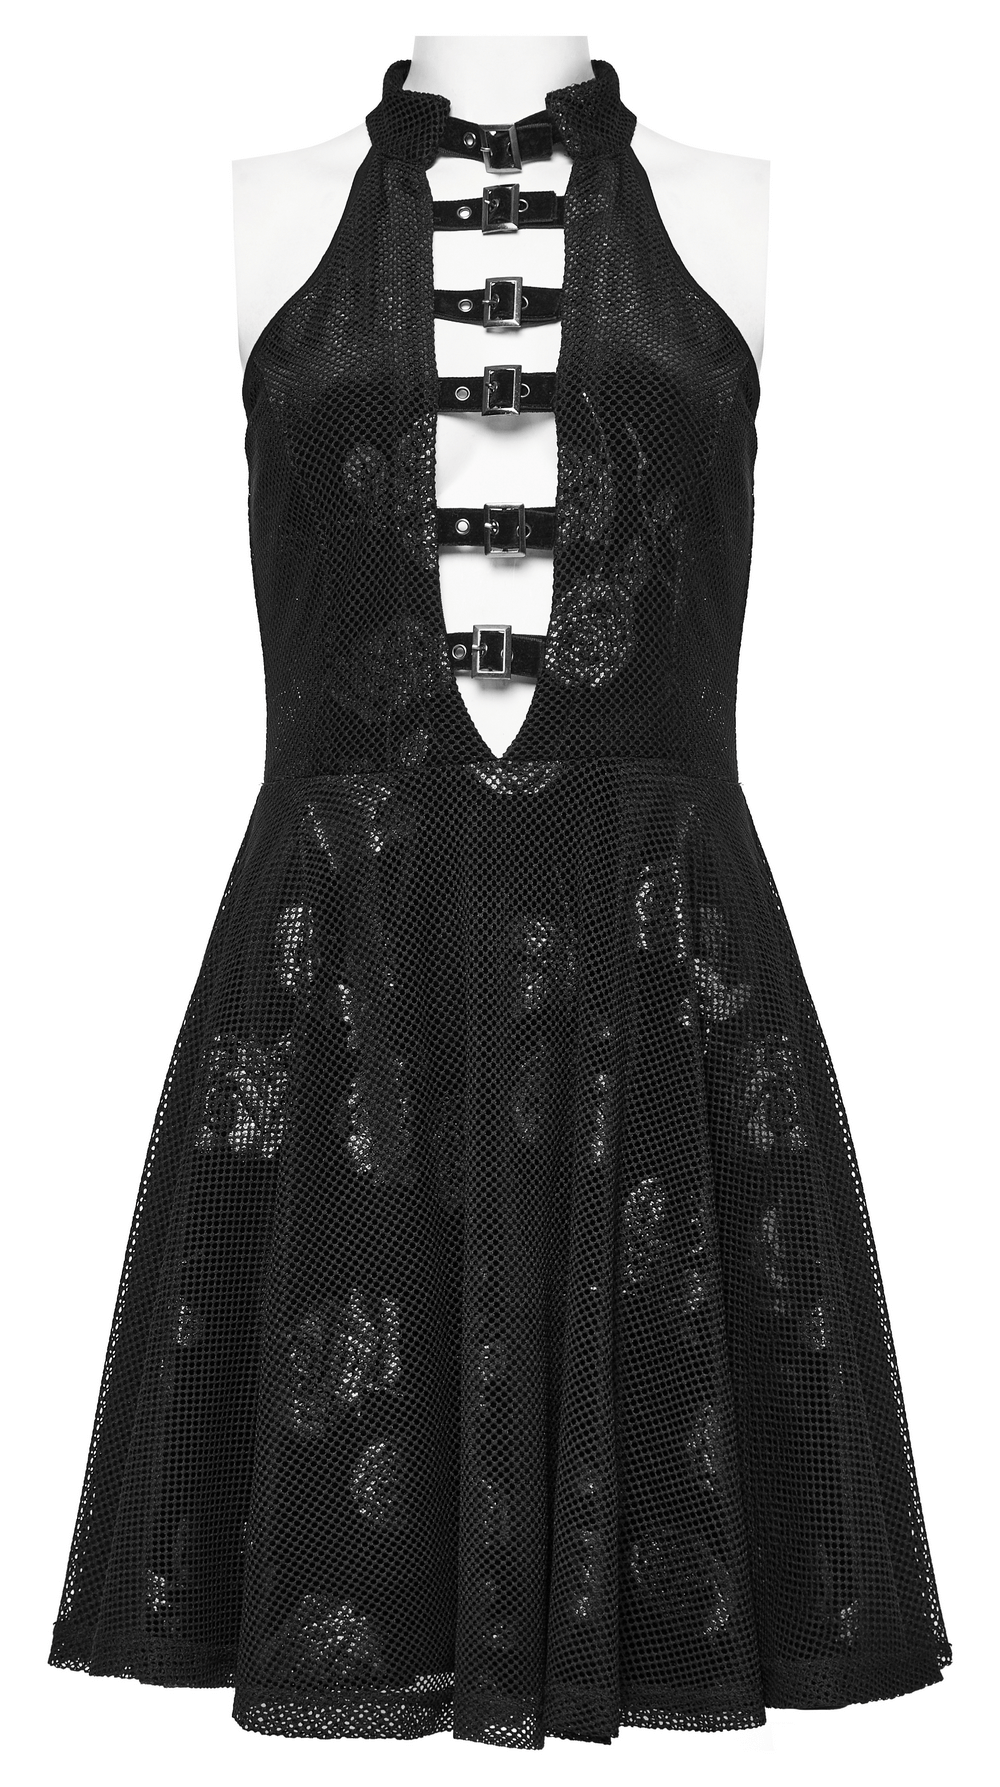 Enchanting Black Gothic Velvet Rose Print Halter Dress